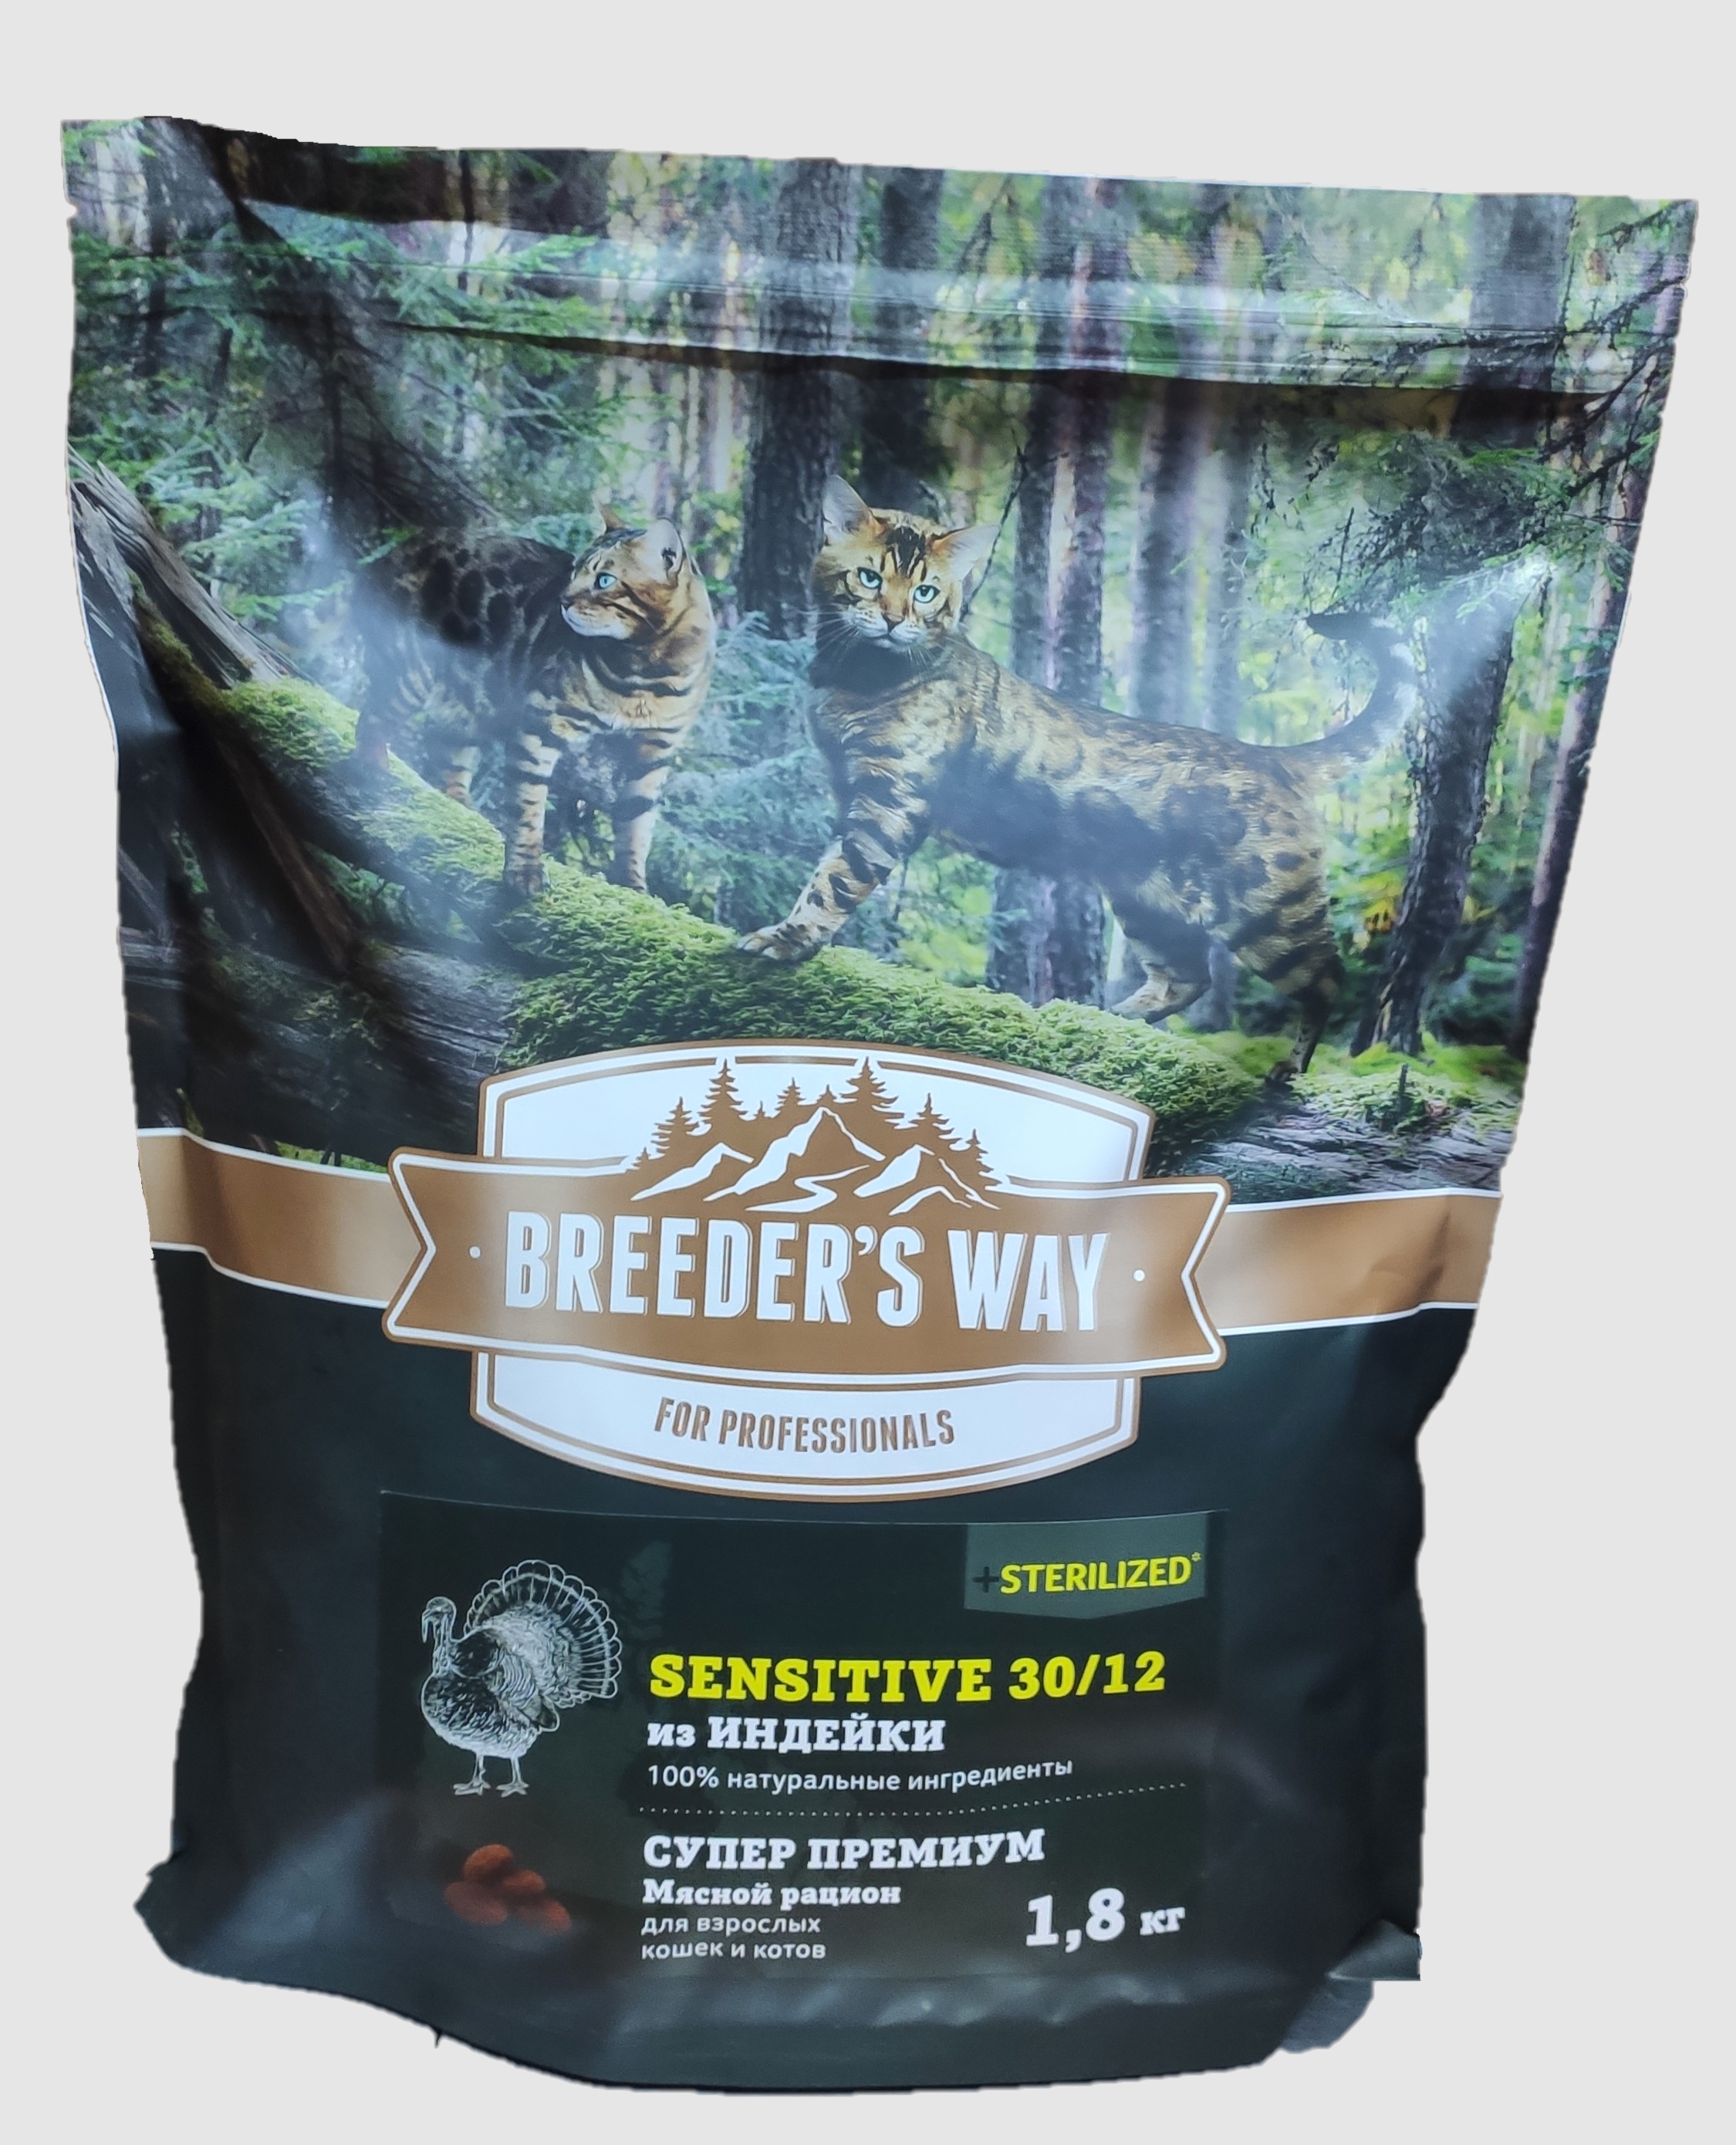 Breeder's Way Sensitive полнорационный корм для кошек с индейкой 1.8кг фото, цены, купить